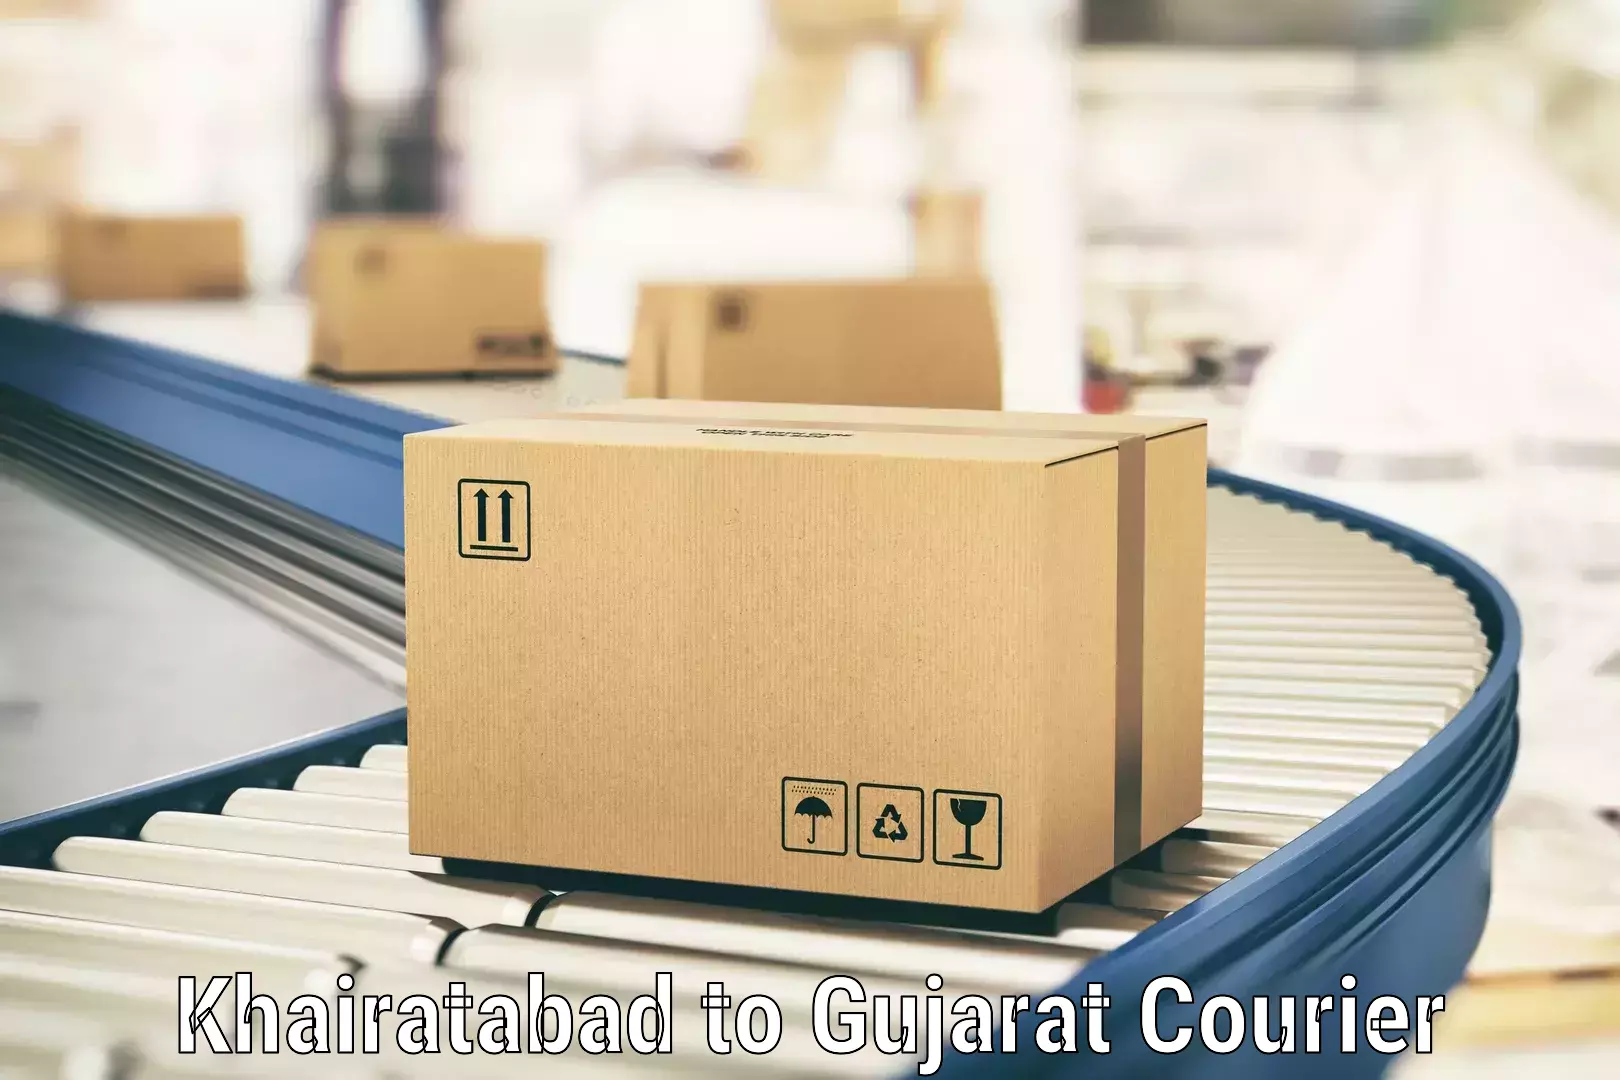 Professional parcel services Khairatabad to NIT Surat